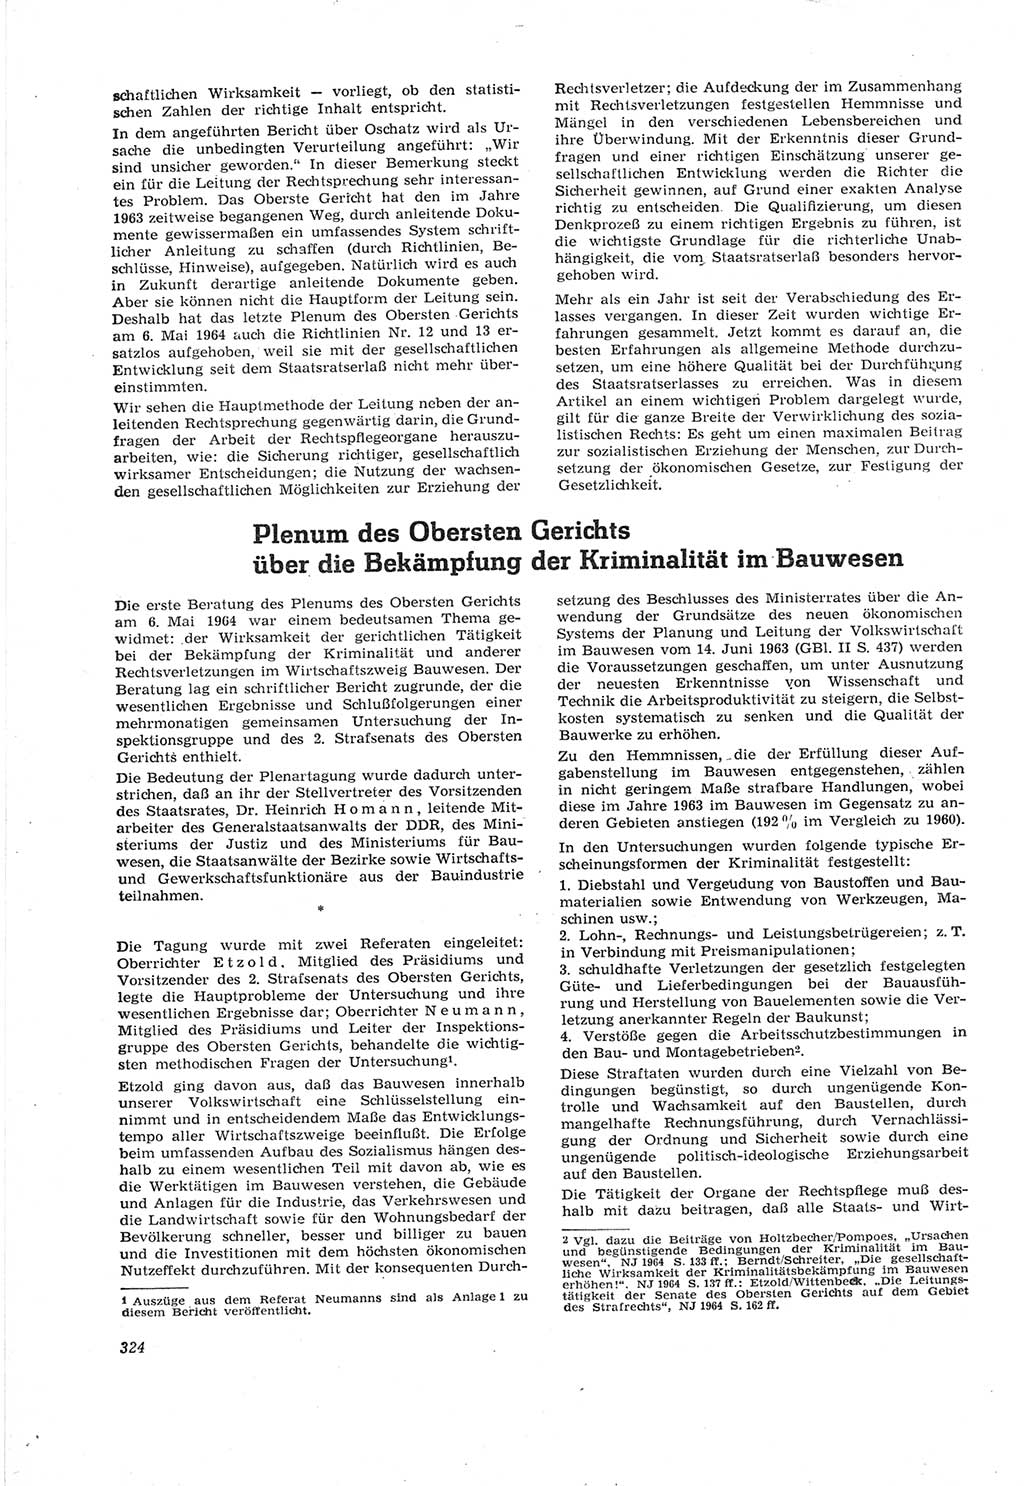 Neue Justiz (NJ), Zeitschrift für Recht und Rechtswissenschaft [Deutsche Demokratische Republik (DDR)], 18. Jahrgang 1964, Seite 324 (NJ DDR 1964, S. 324)